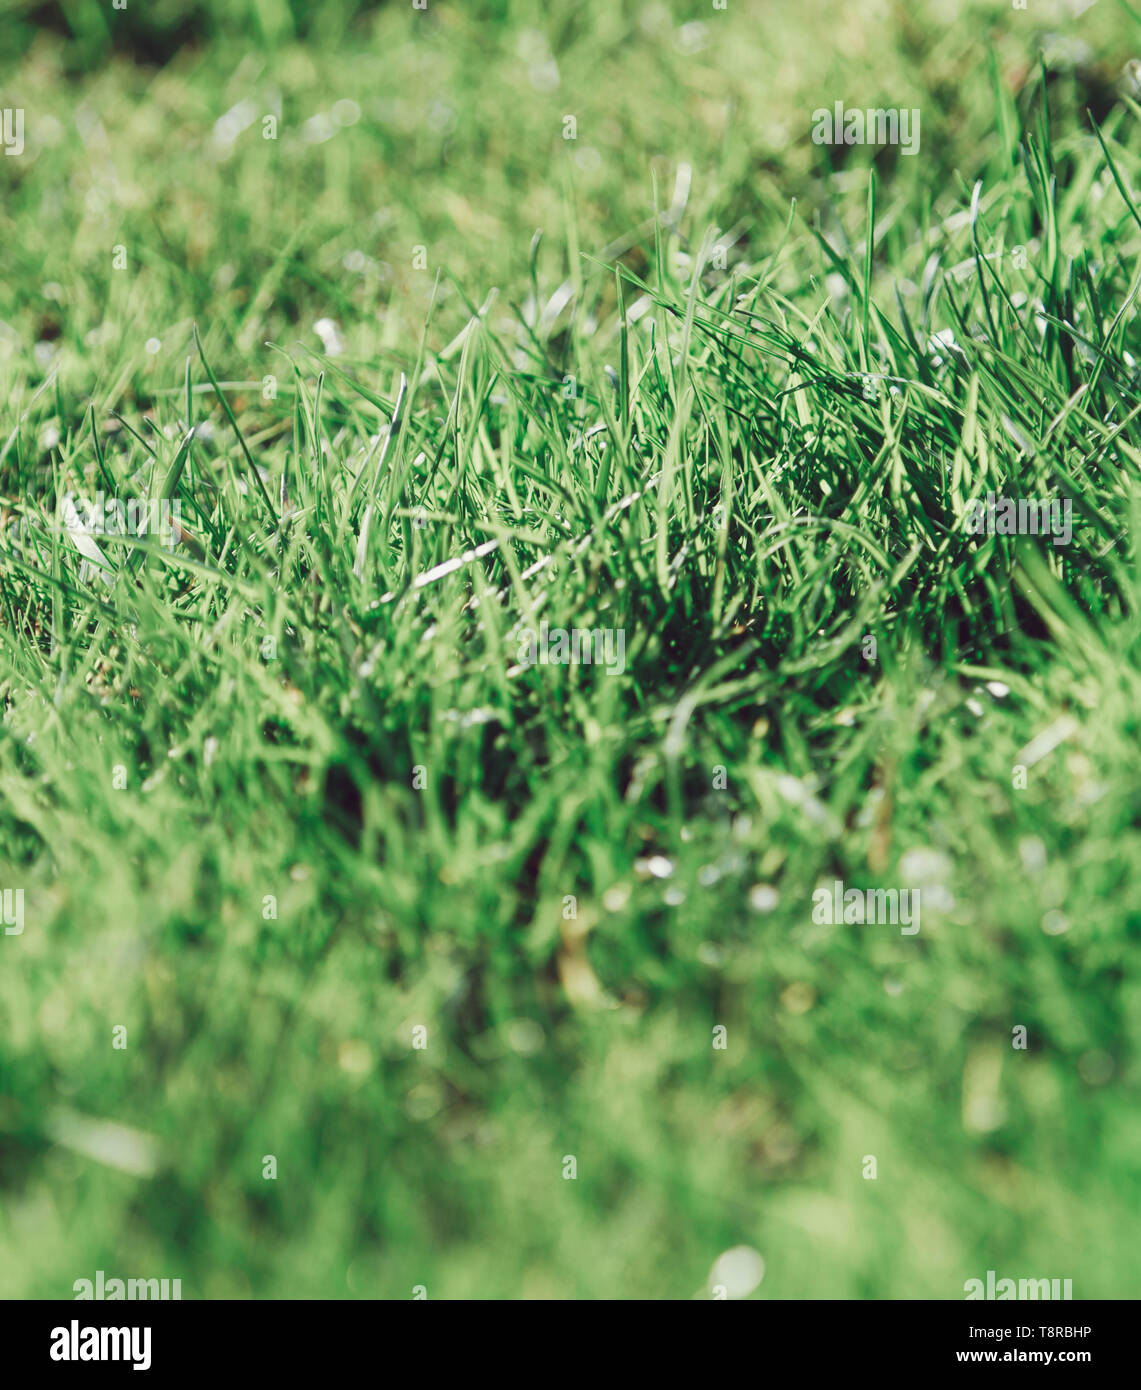 Dettaglio di un naturale erba verde Foto Stock